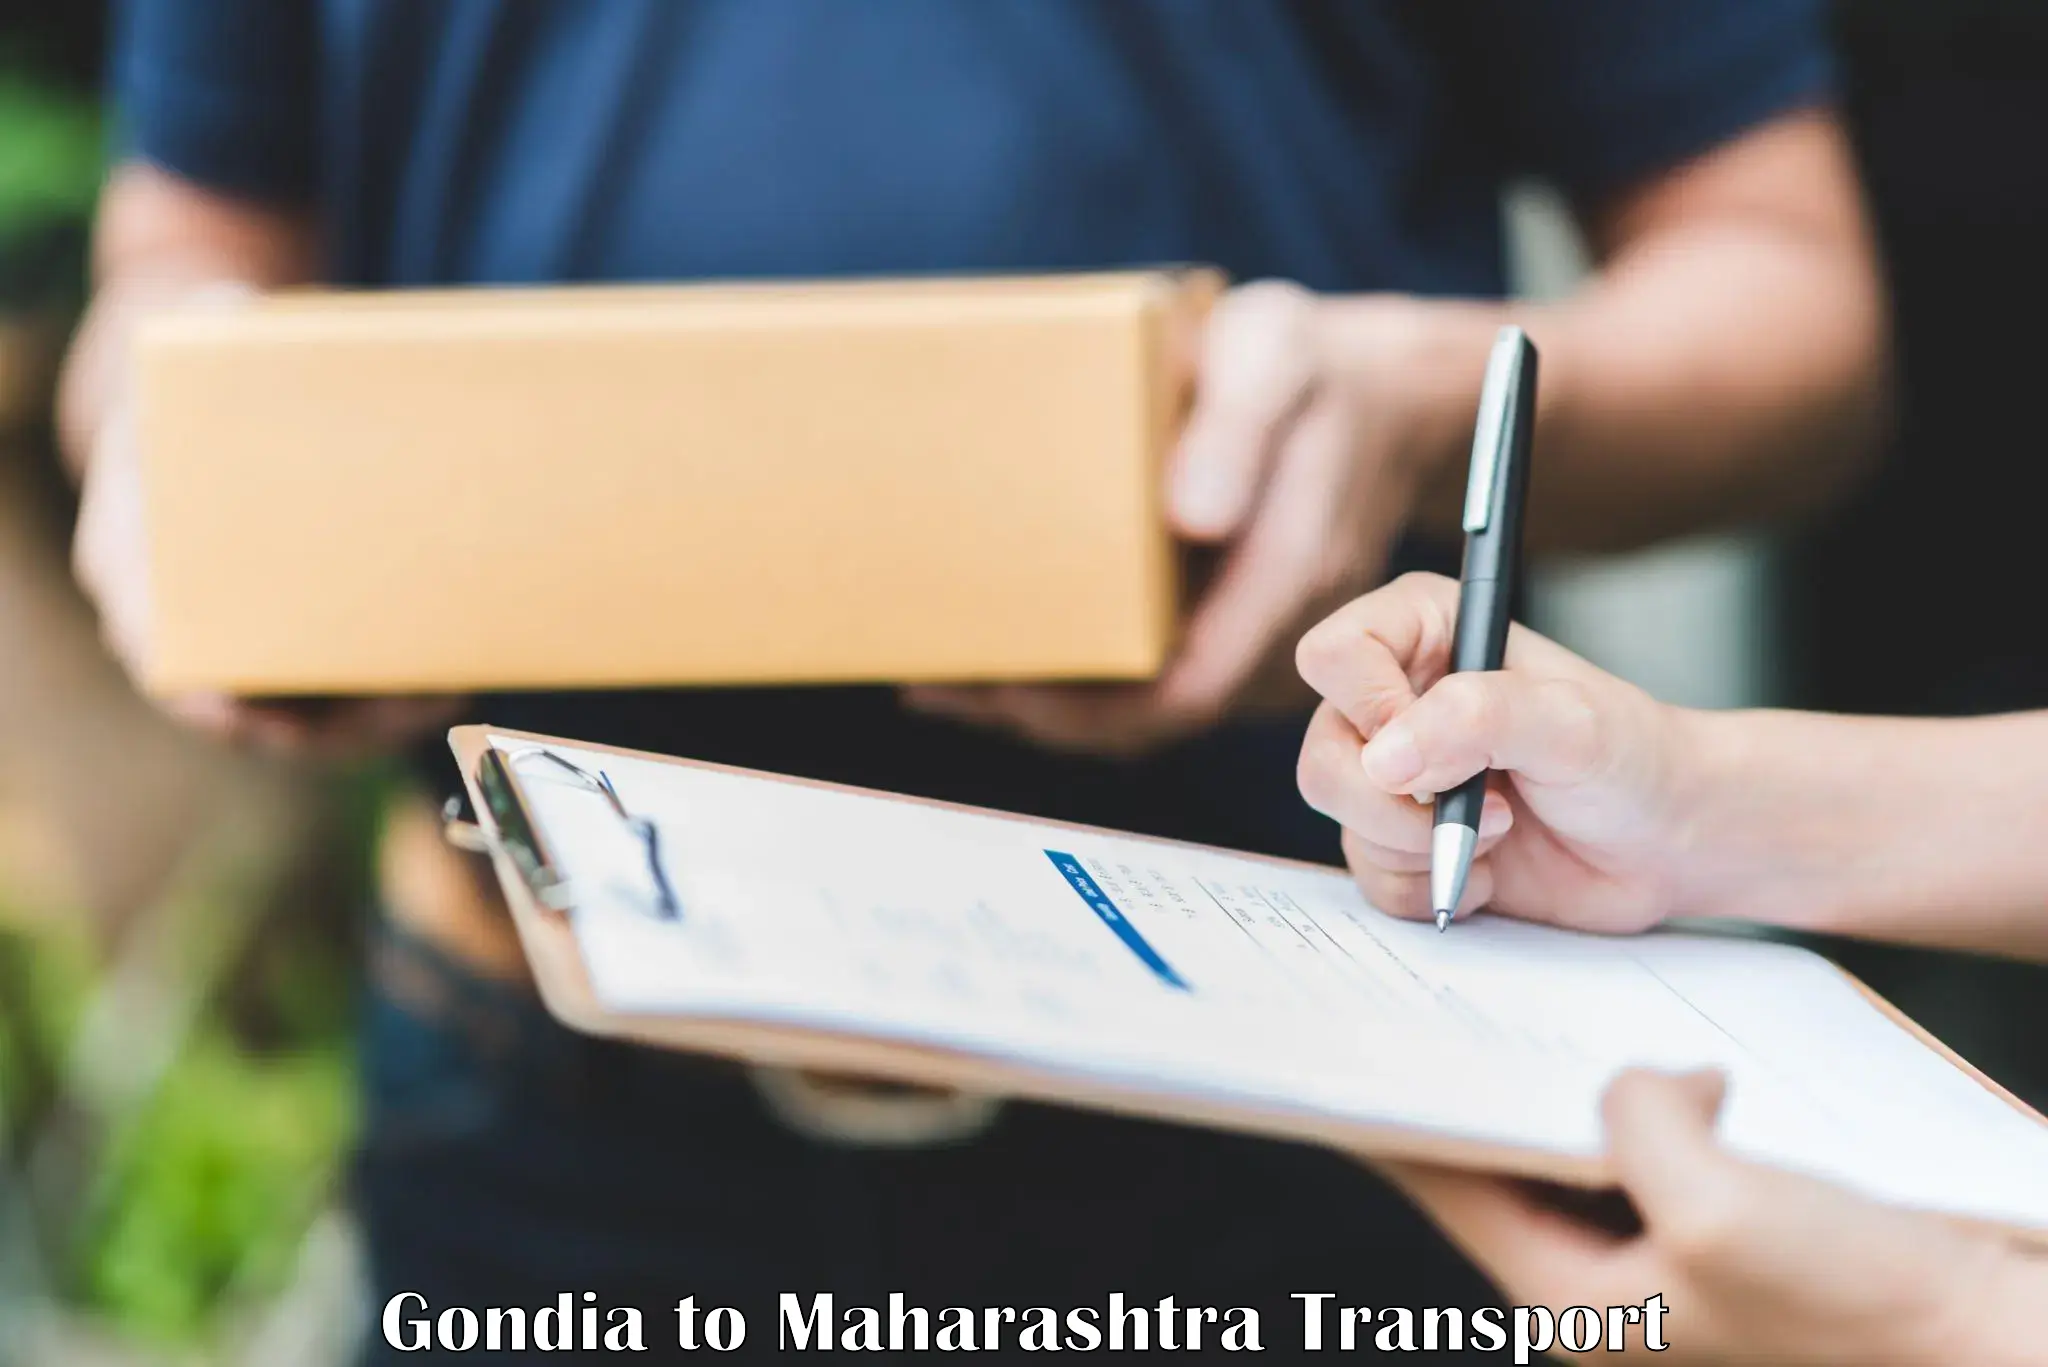 Road transport online services Gondia to Tata Institute of Social Sciences Mumbai